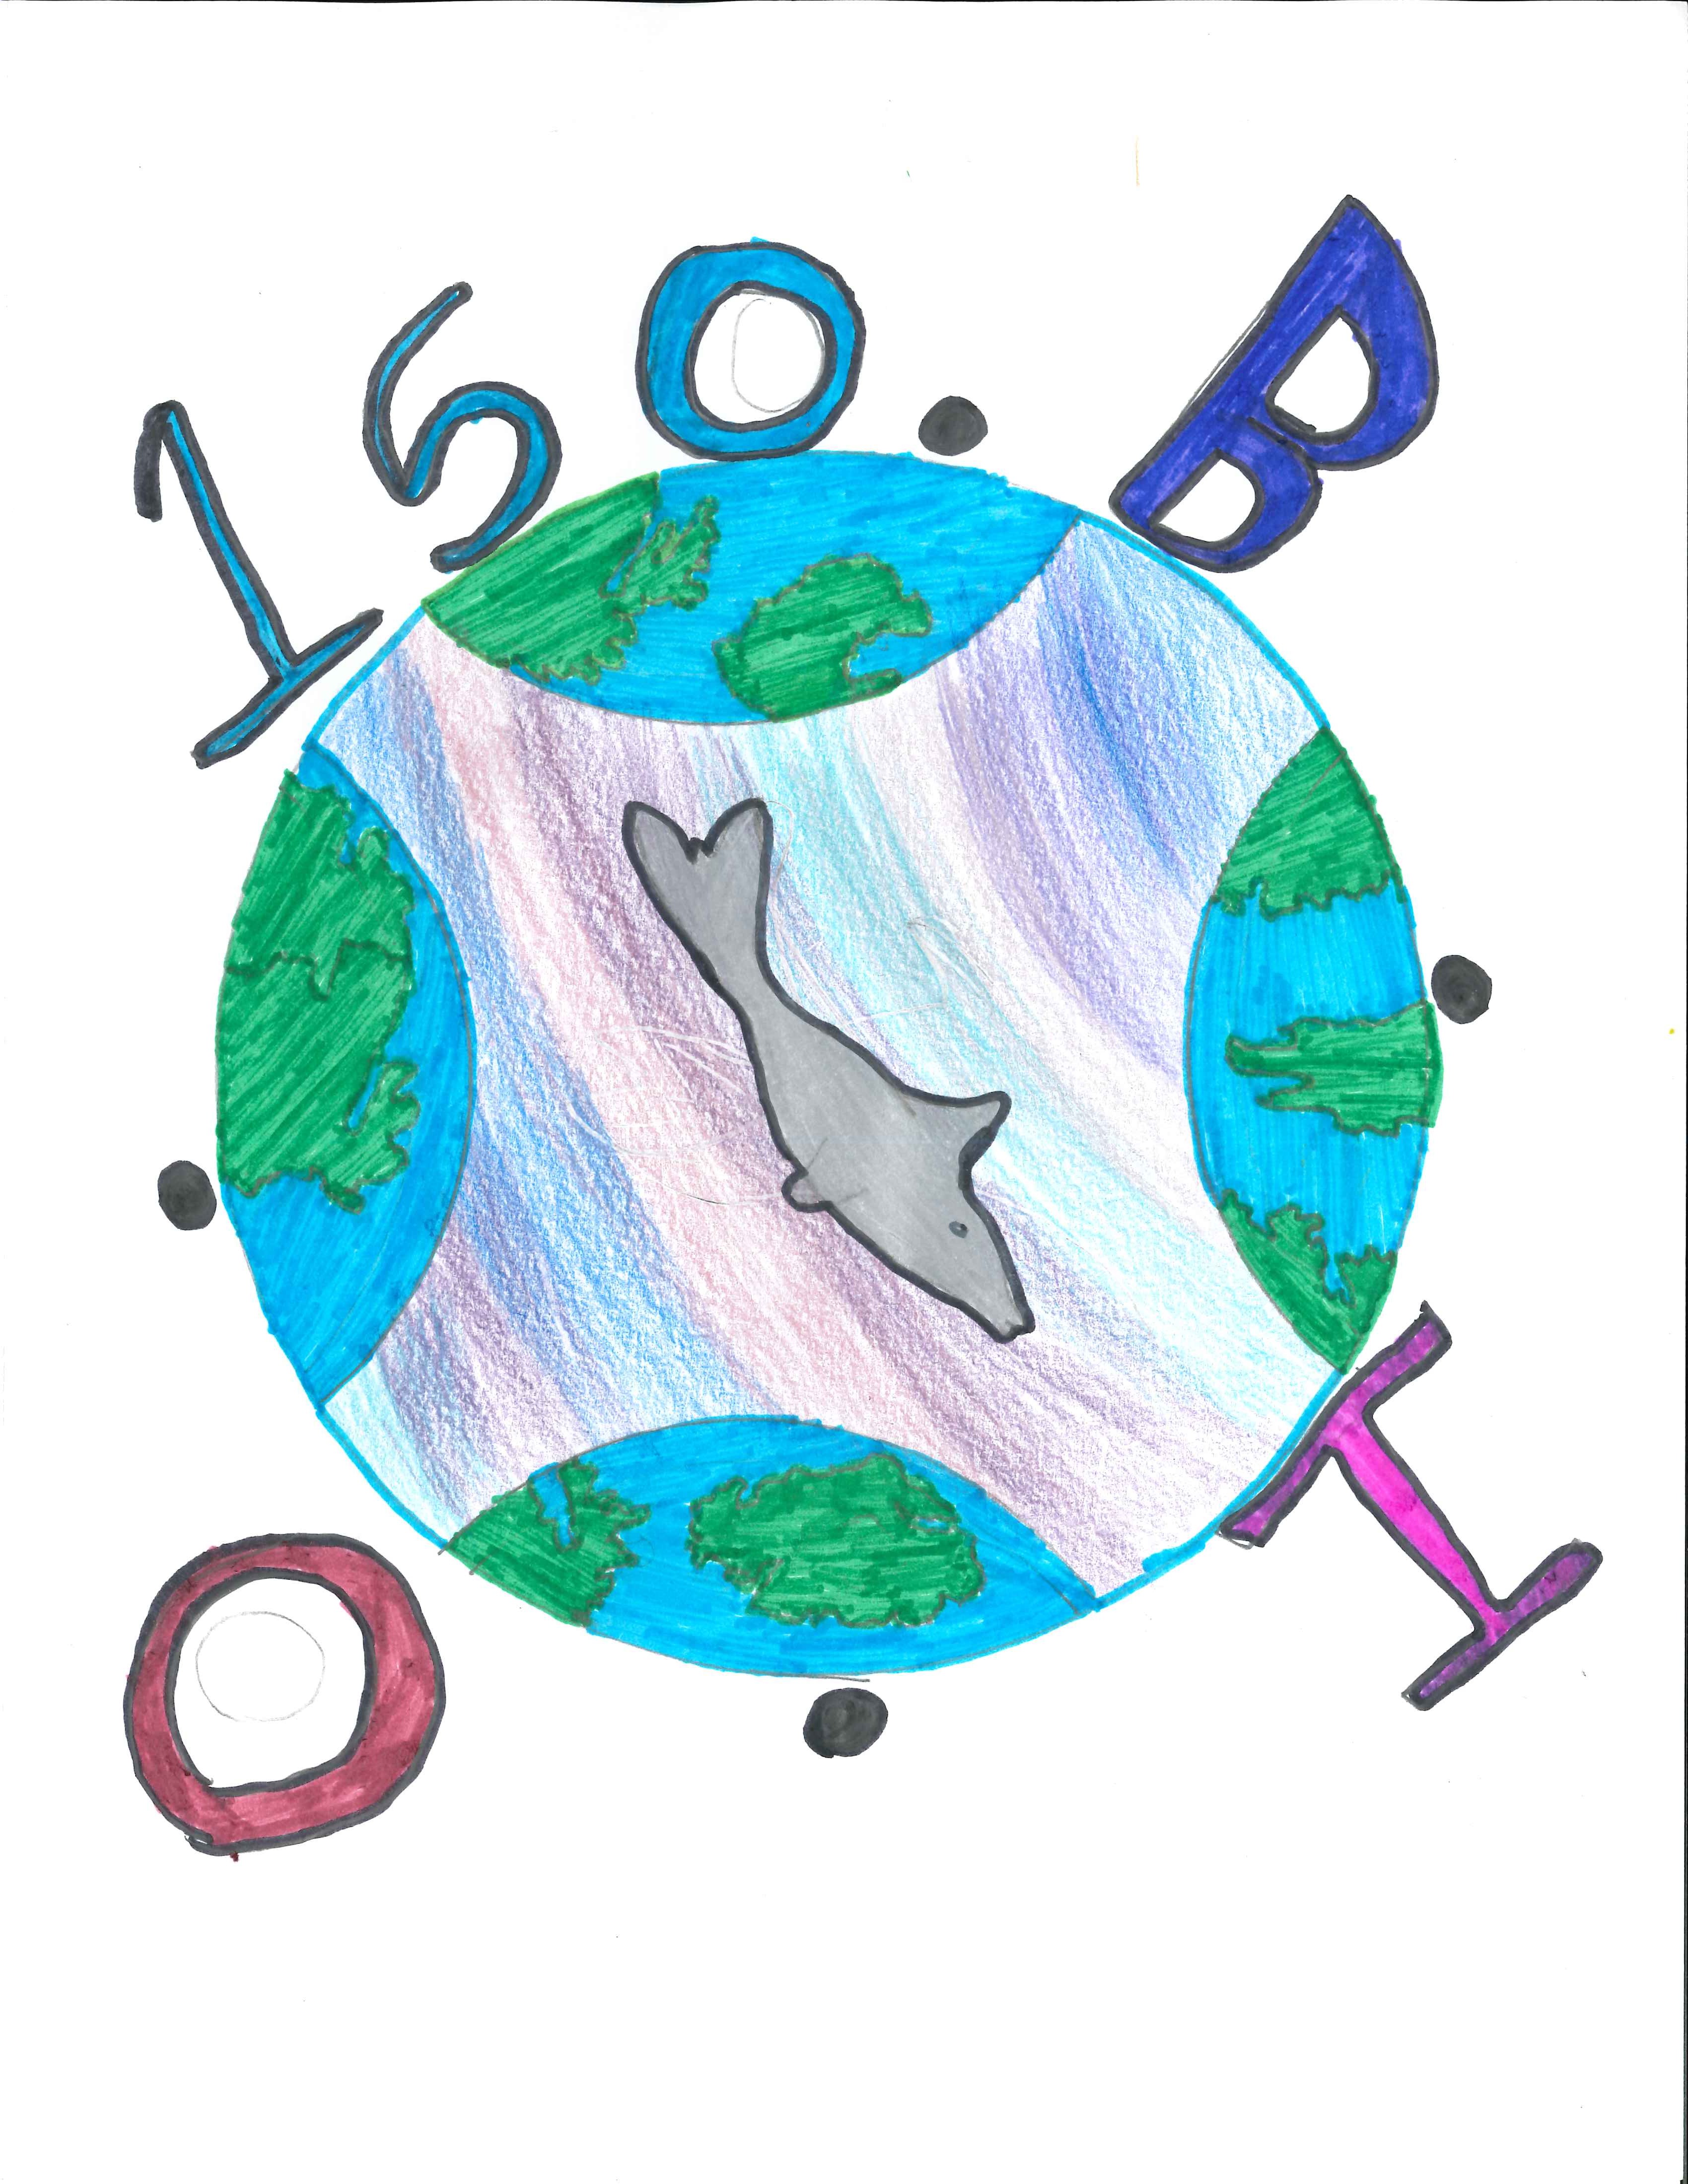 Third Prize: Emily V. Grade 6. "Shark earth"